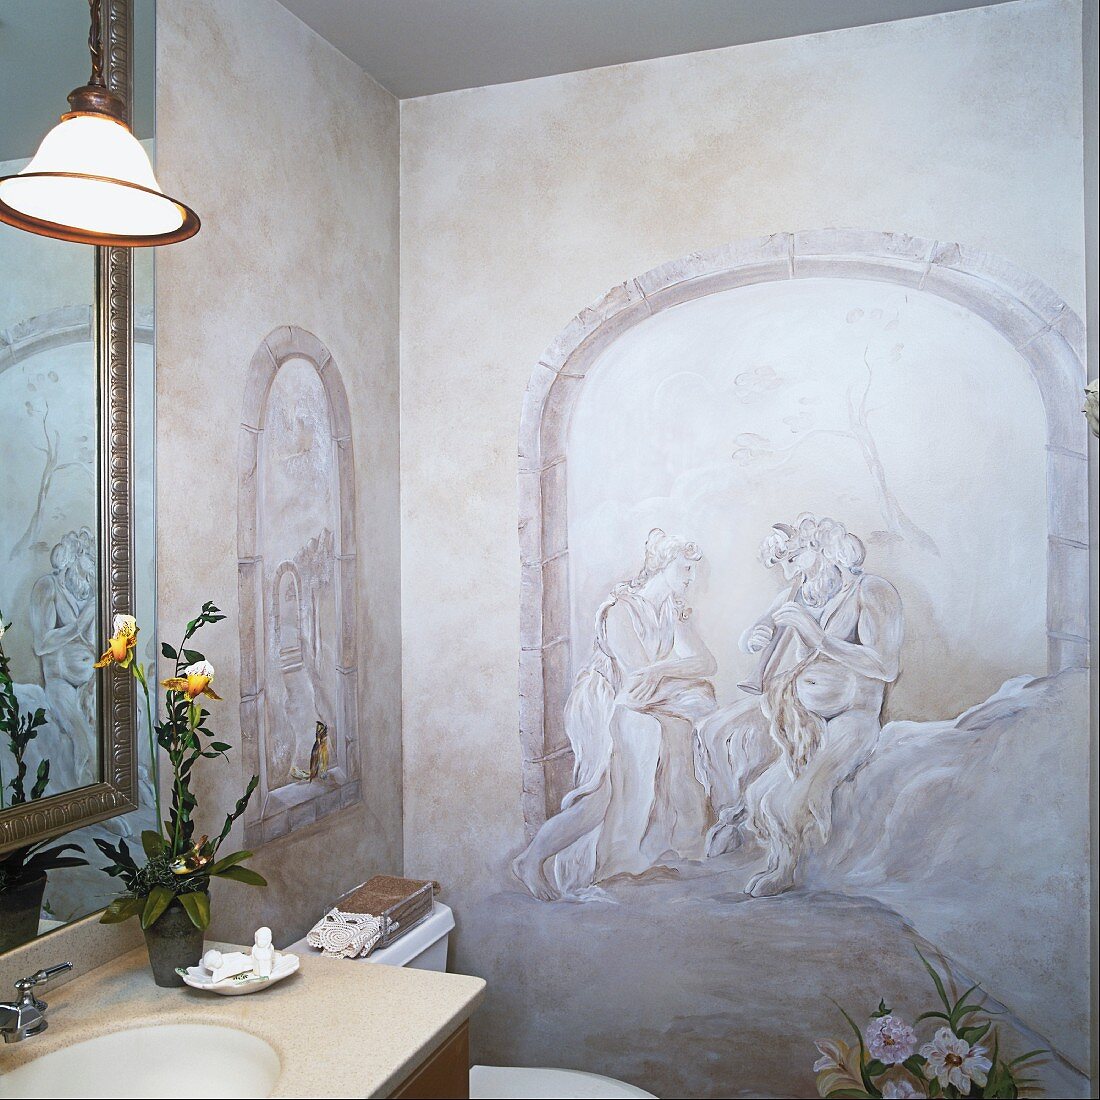 Badezimmerwände mit mythologischem Trompe l'oeil